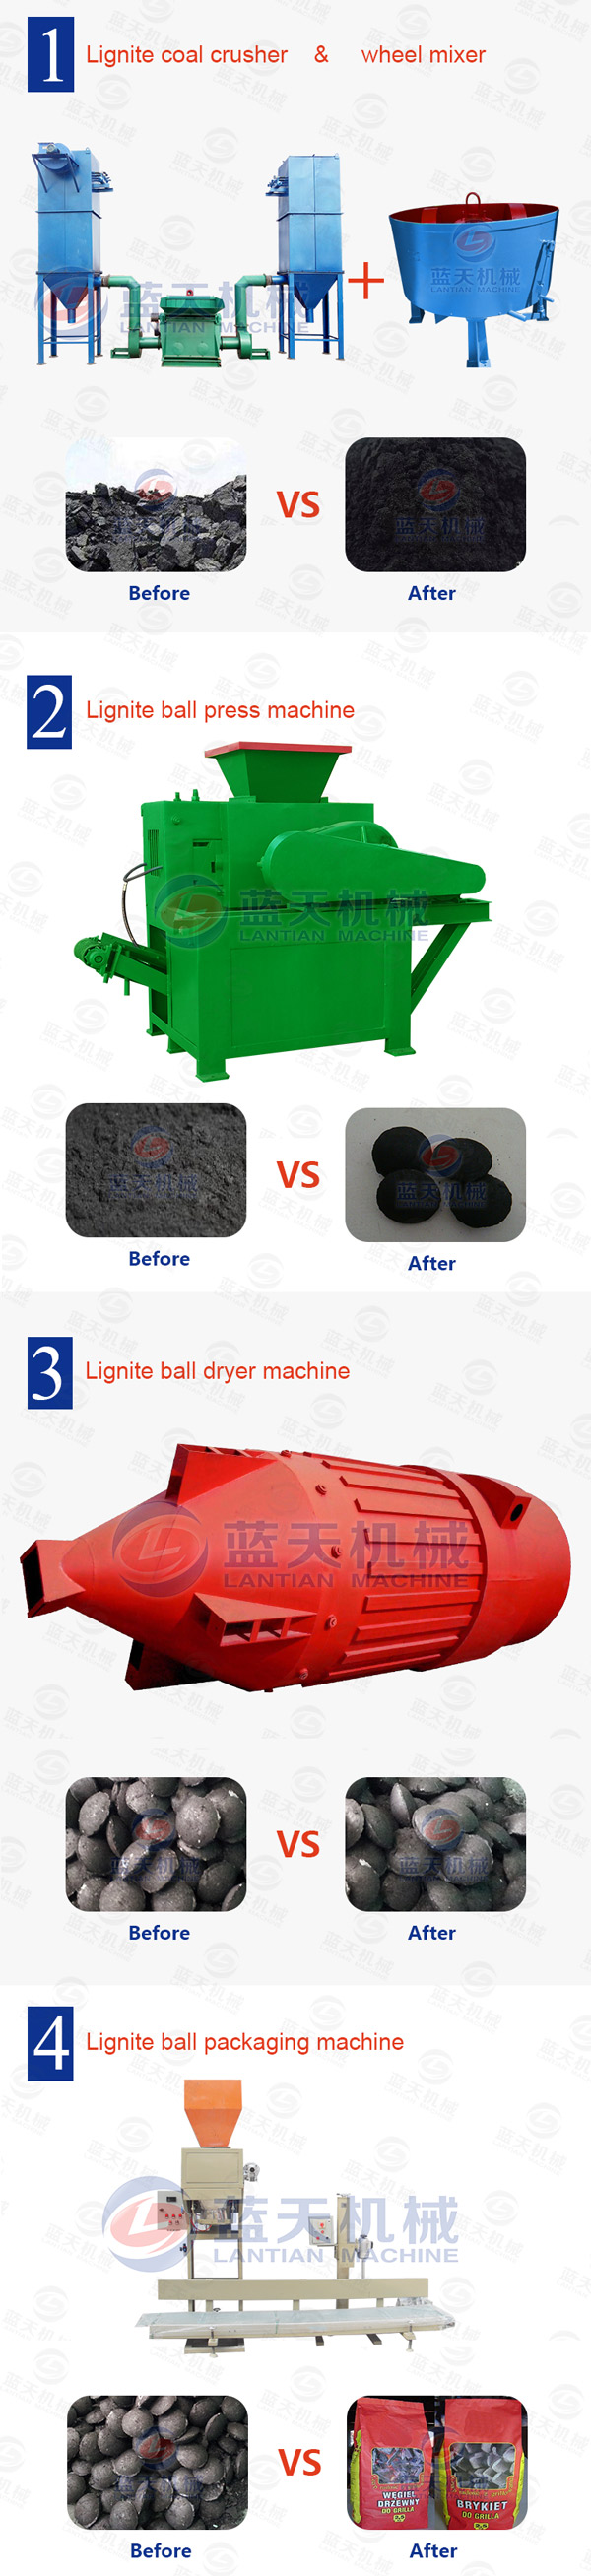 Lignite Ball Press Machine